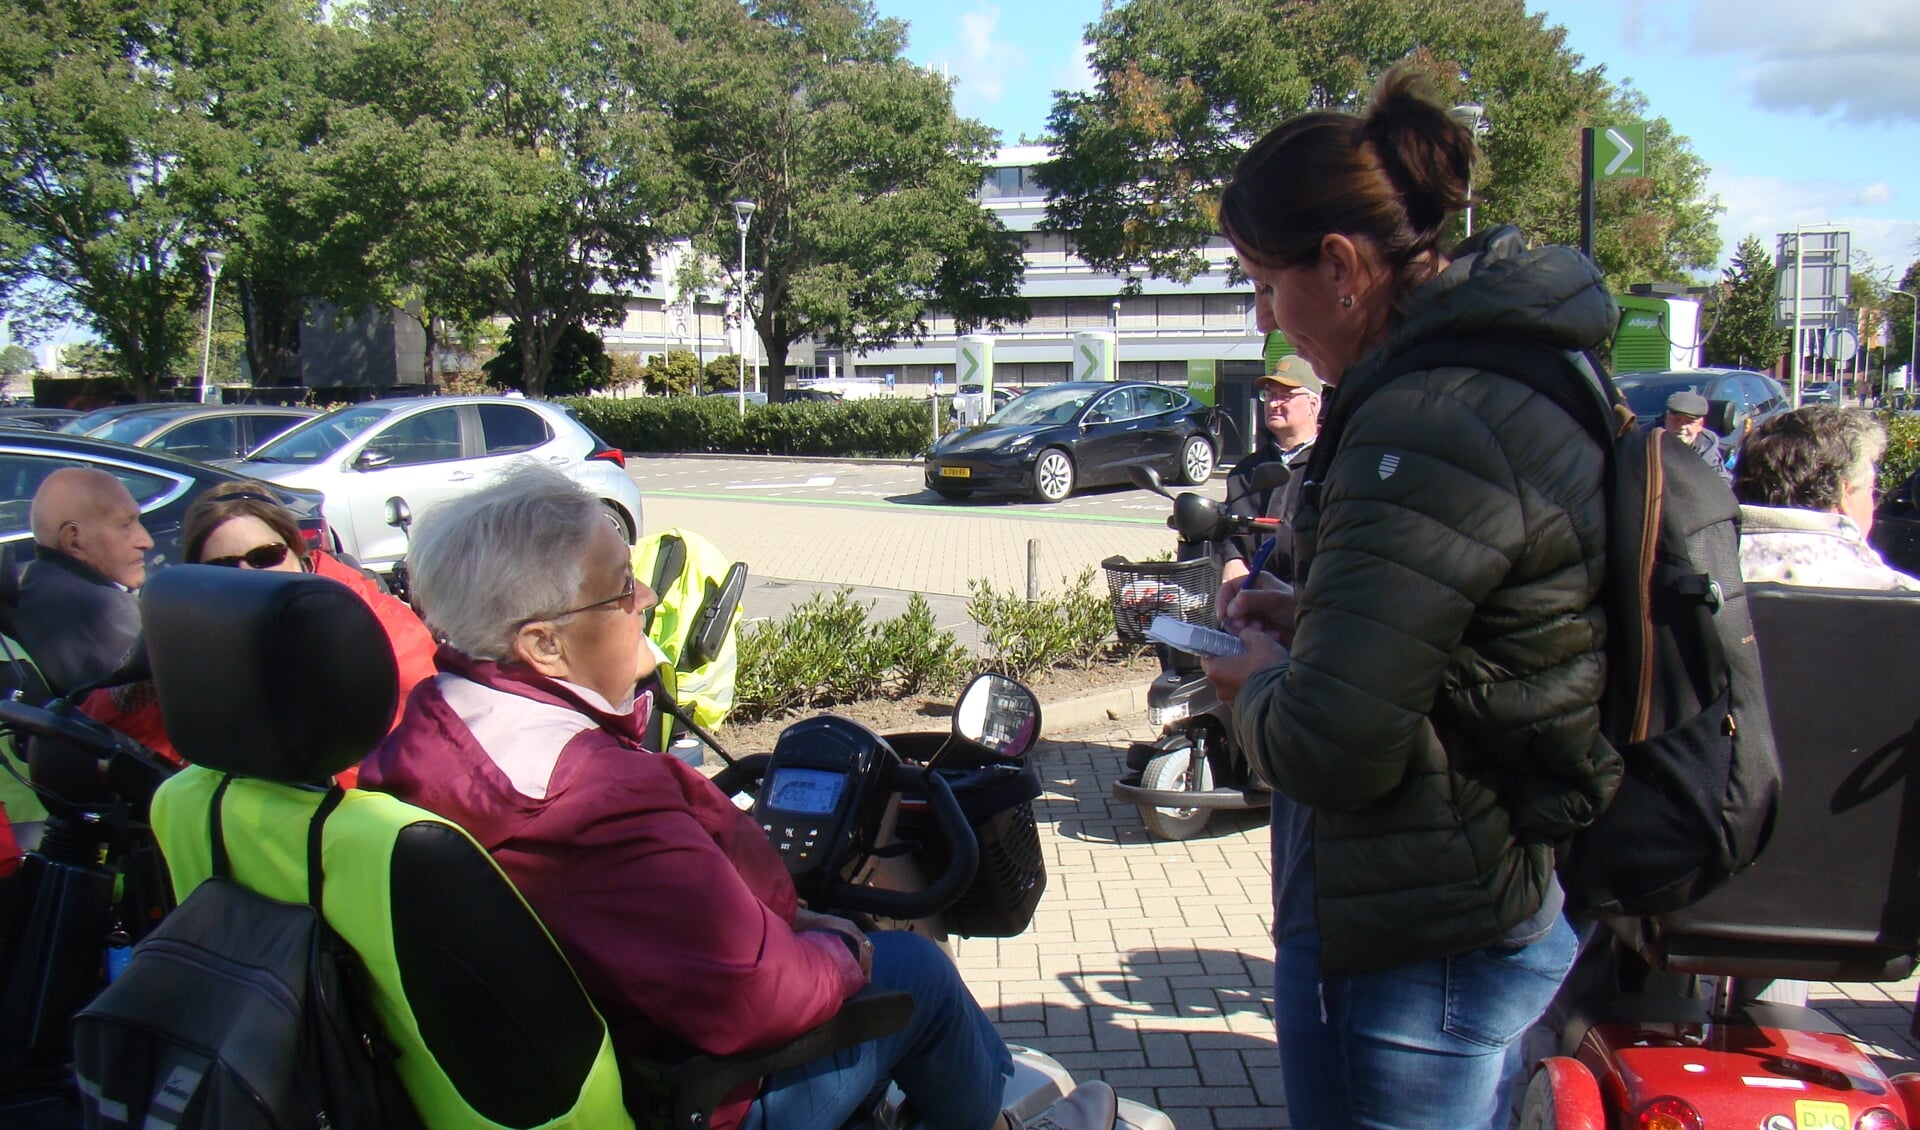  Drukte op de parkeerplaats bij Van der Valk, terwijl de verslaggeefster van Omroep Gelderland in gesprek is met deelnemers van Flipje op wielen